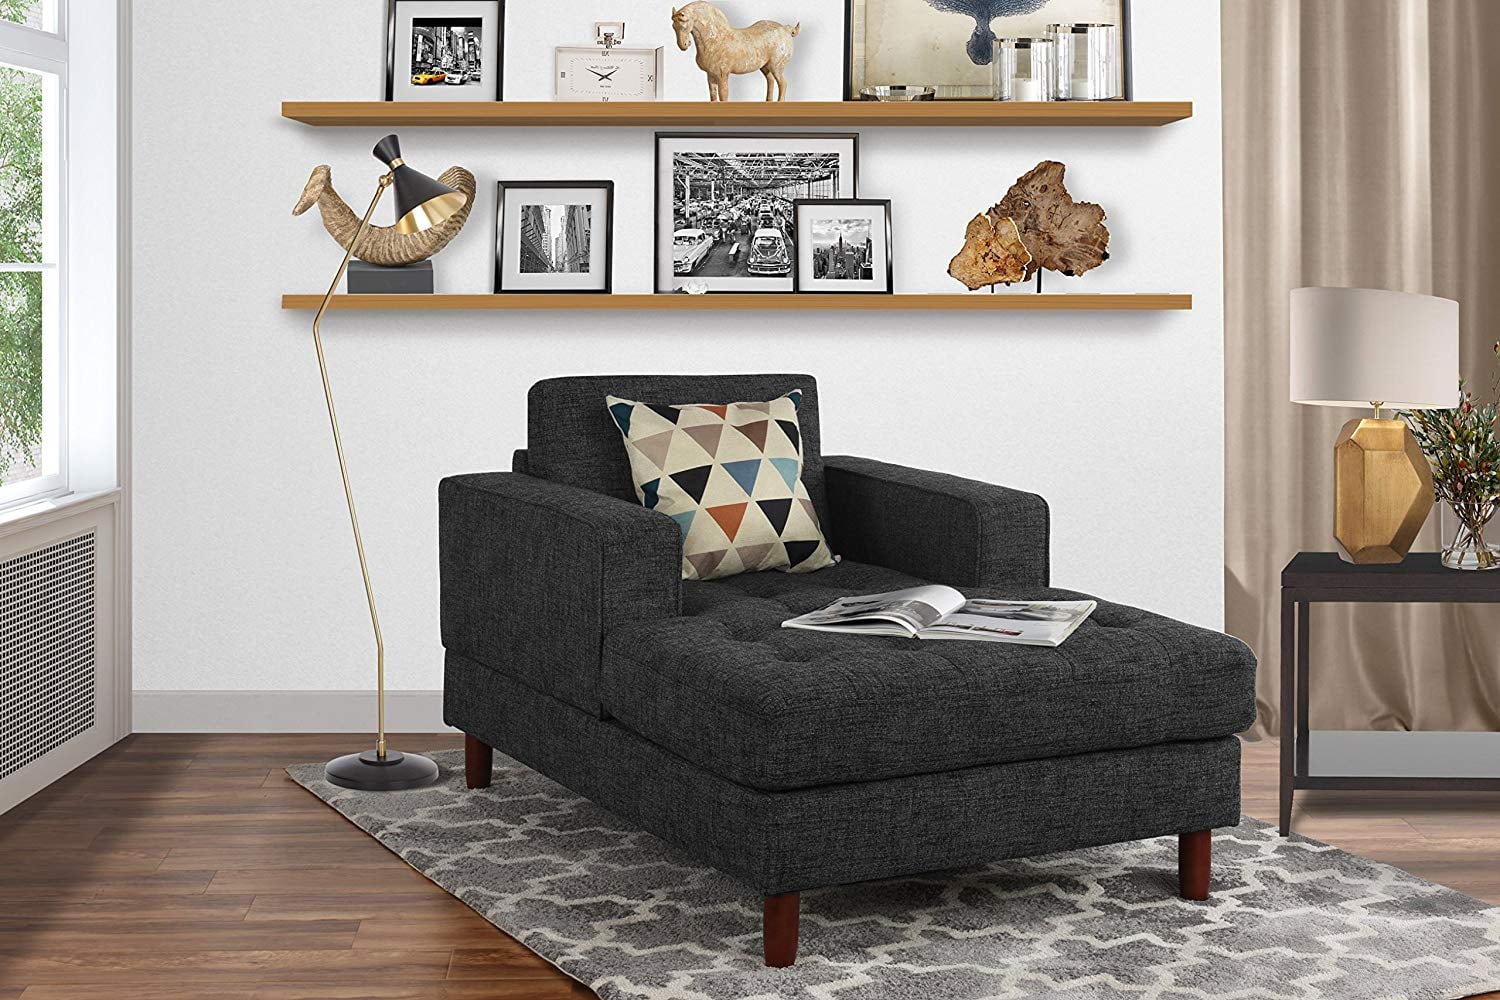 Most Comfortable Living Room Furniture POPSUGAR Home